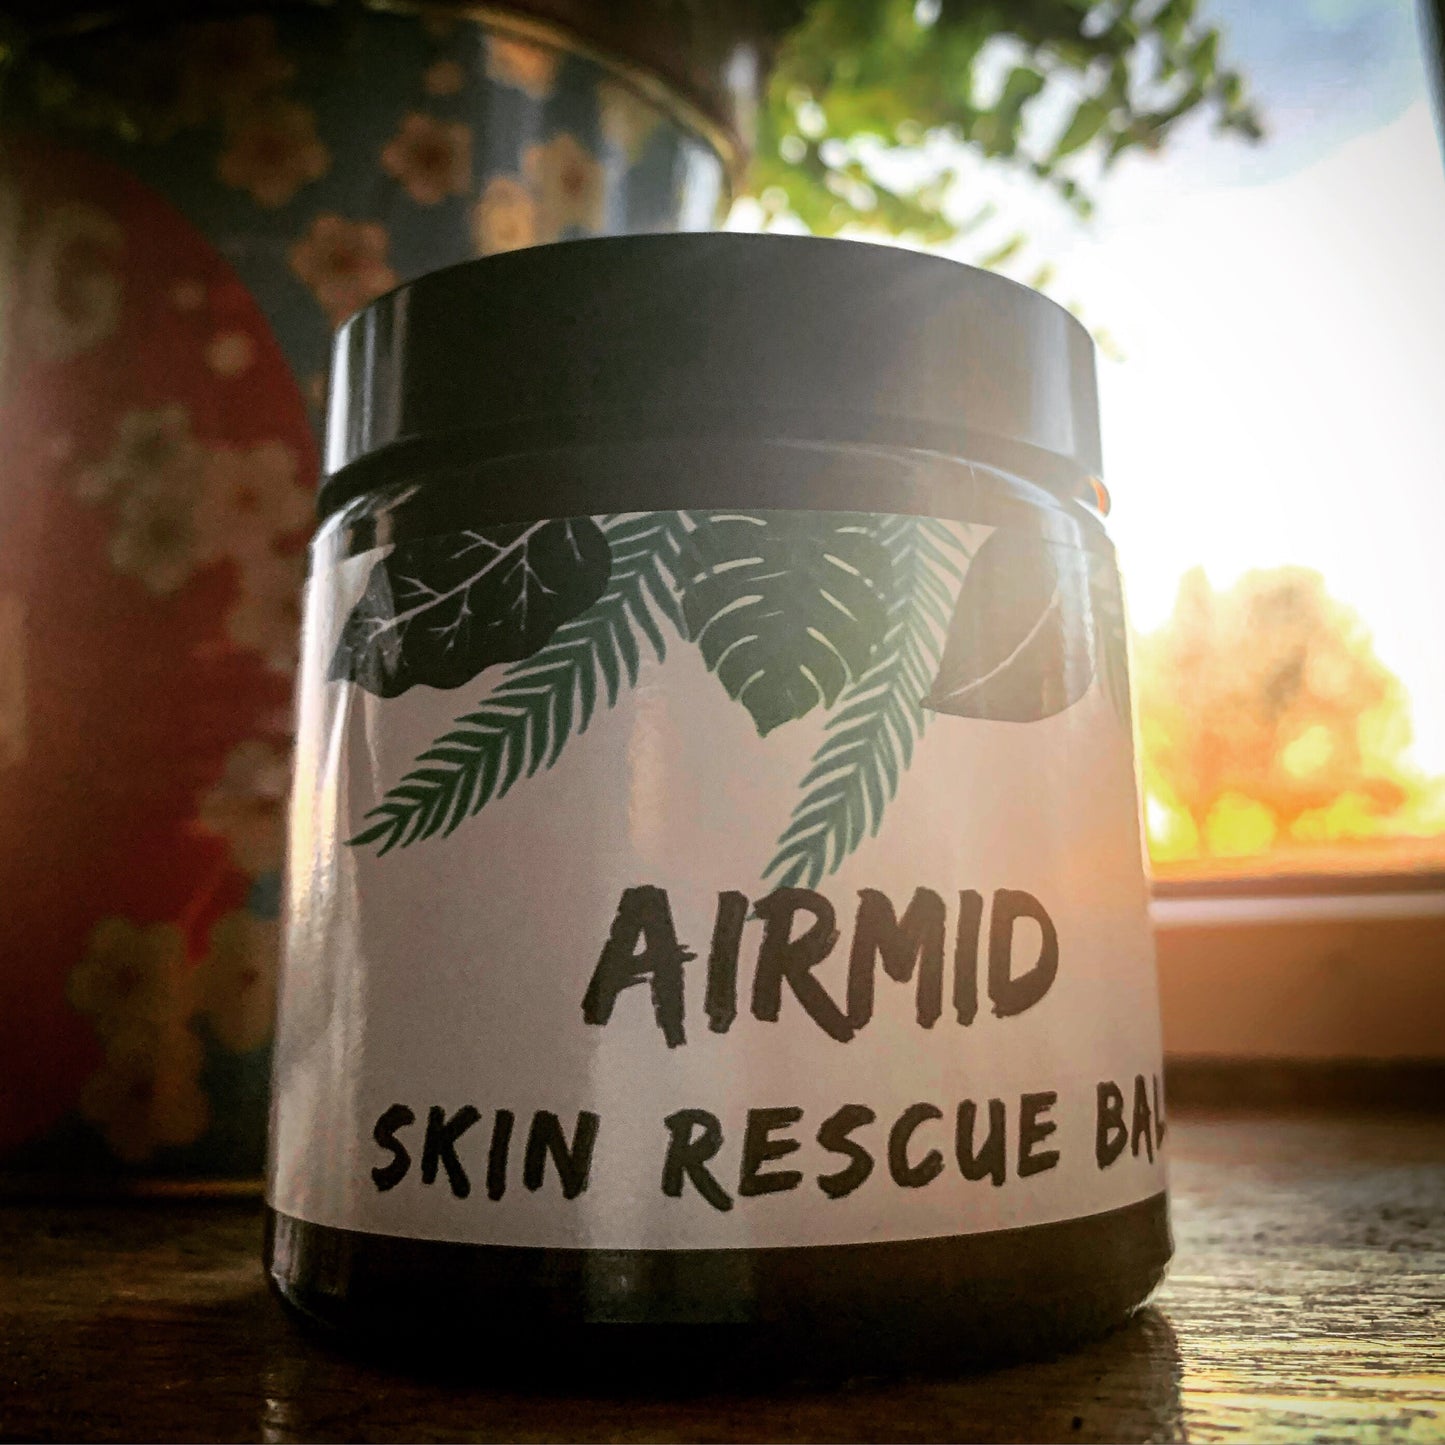 Airmid Skin Rescue Balm